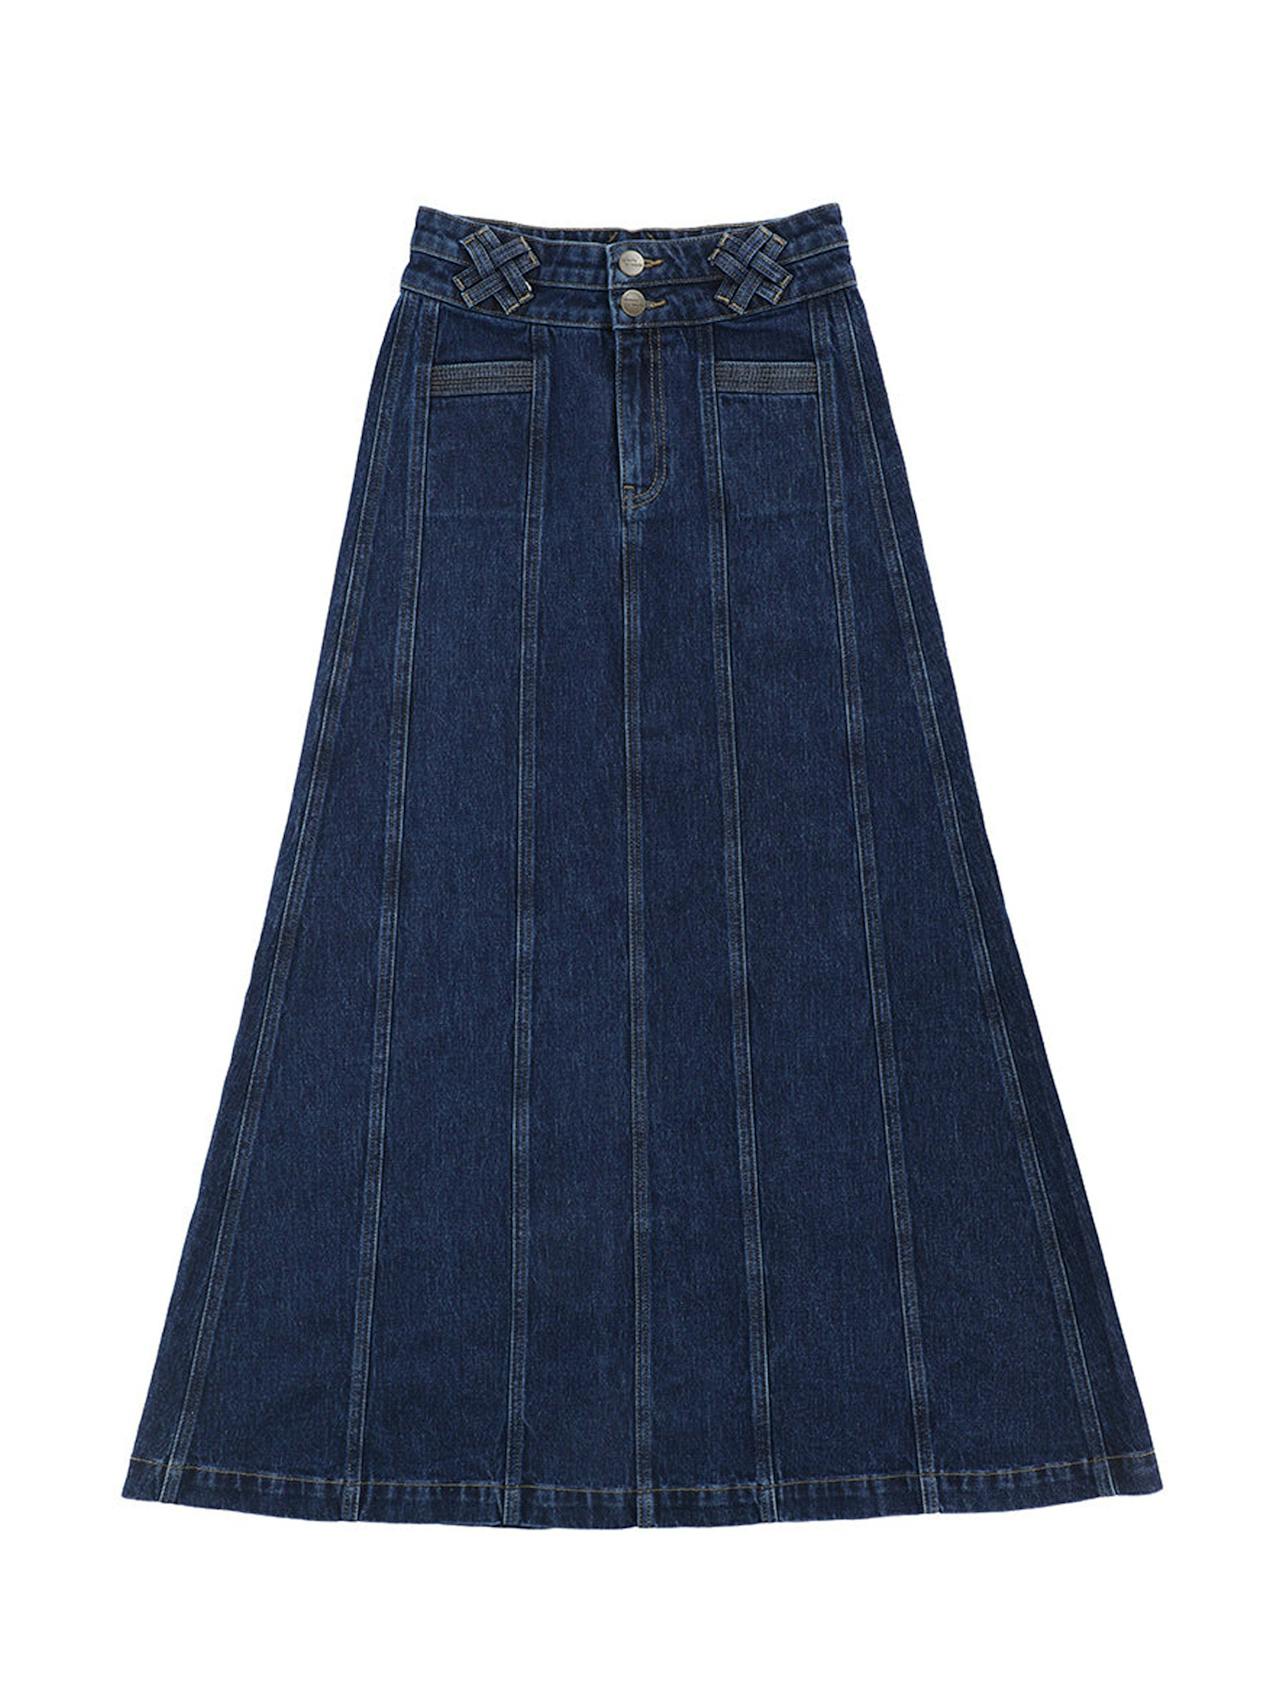 Americana Willow skirt